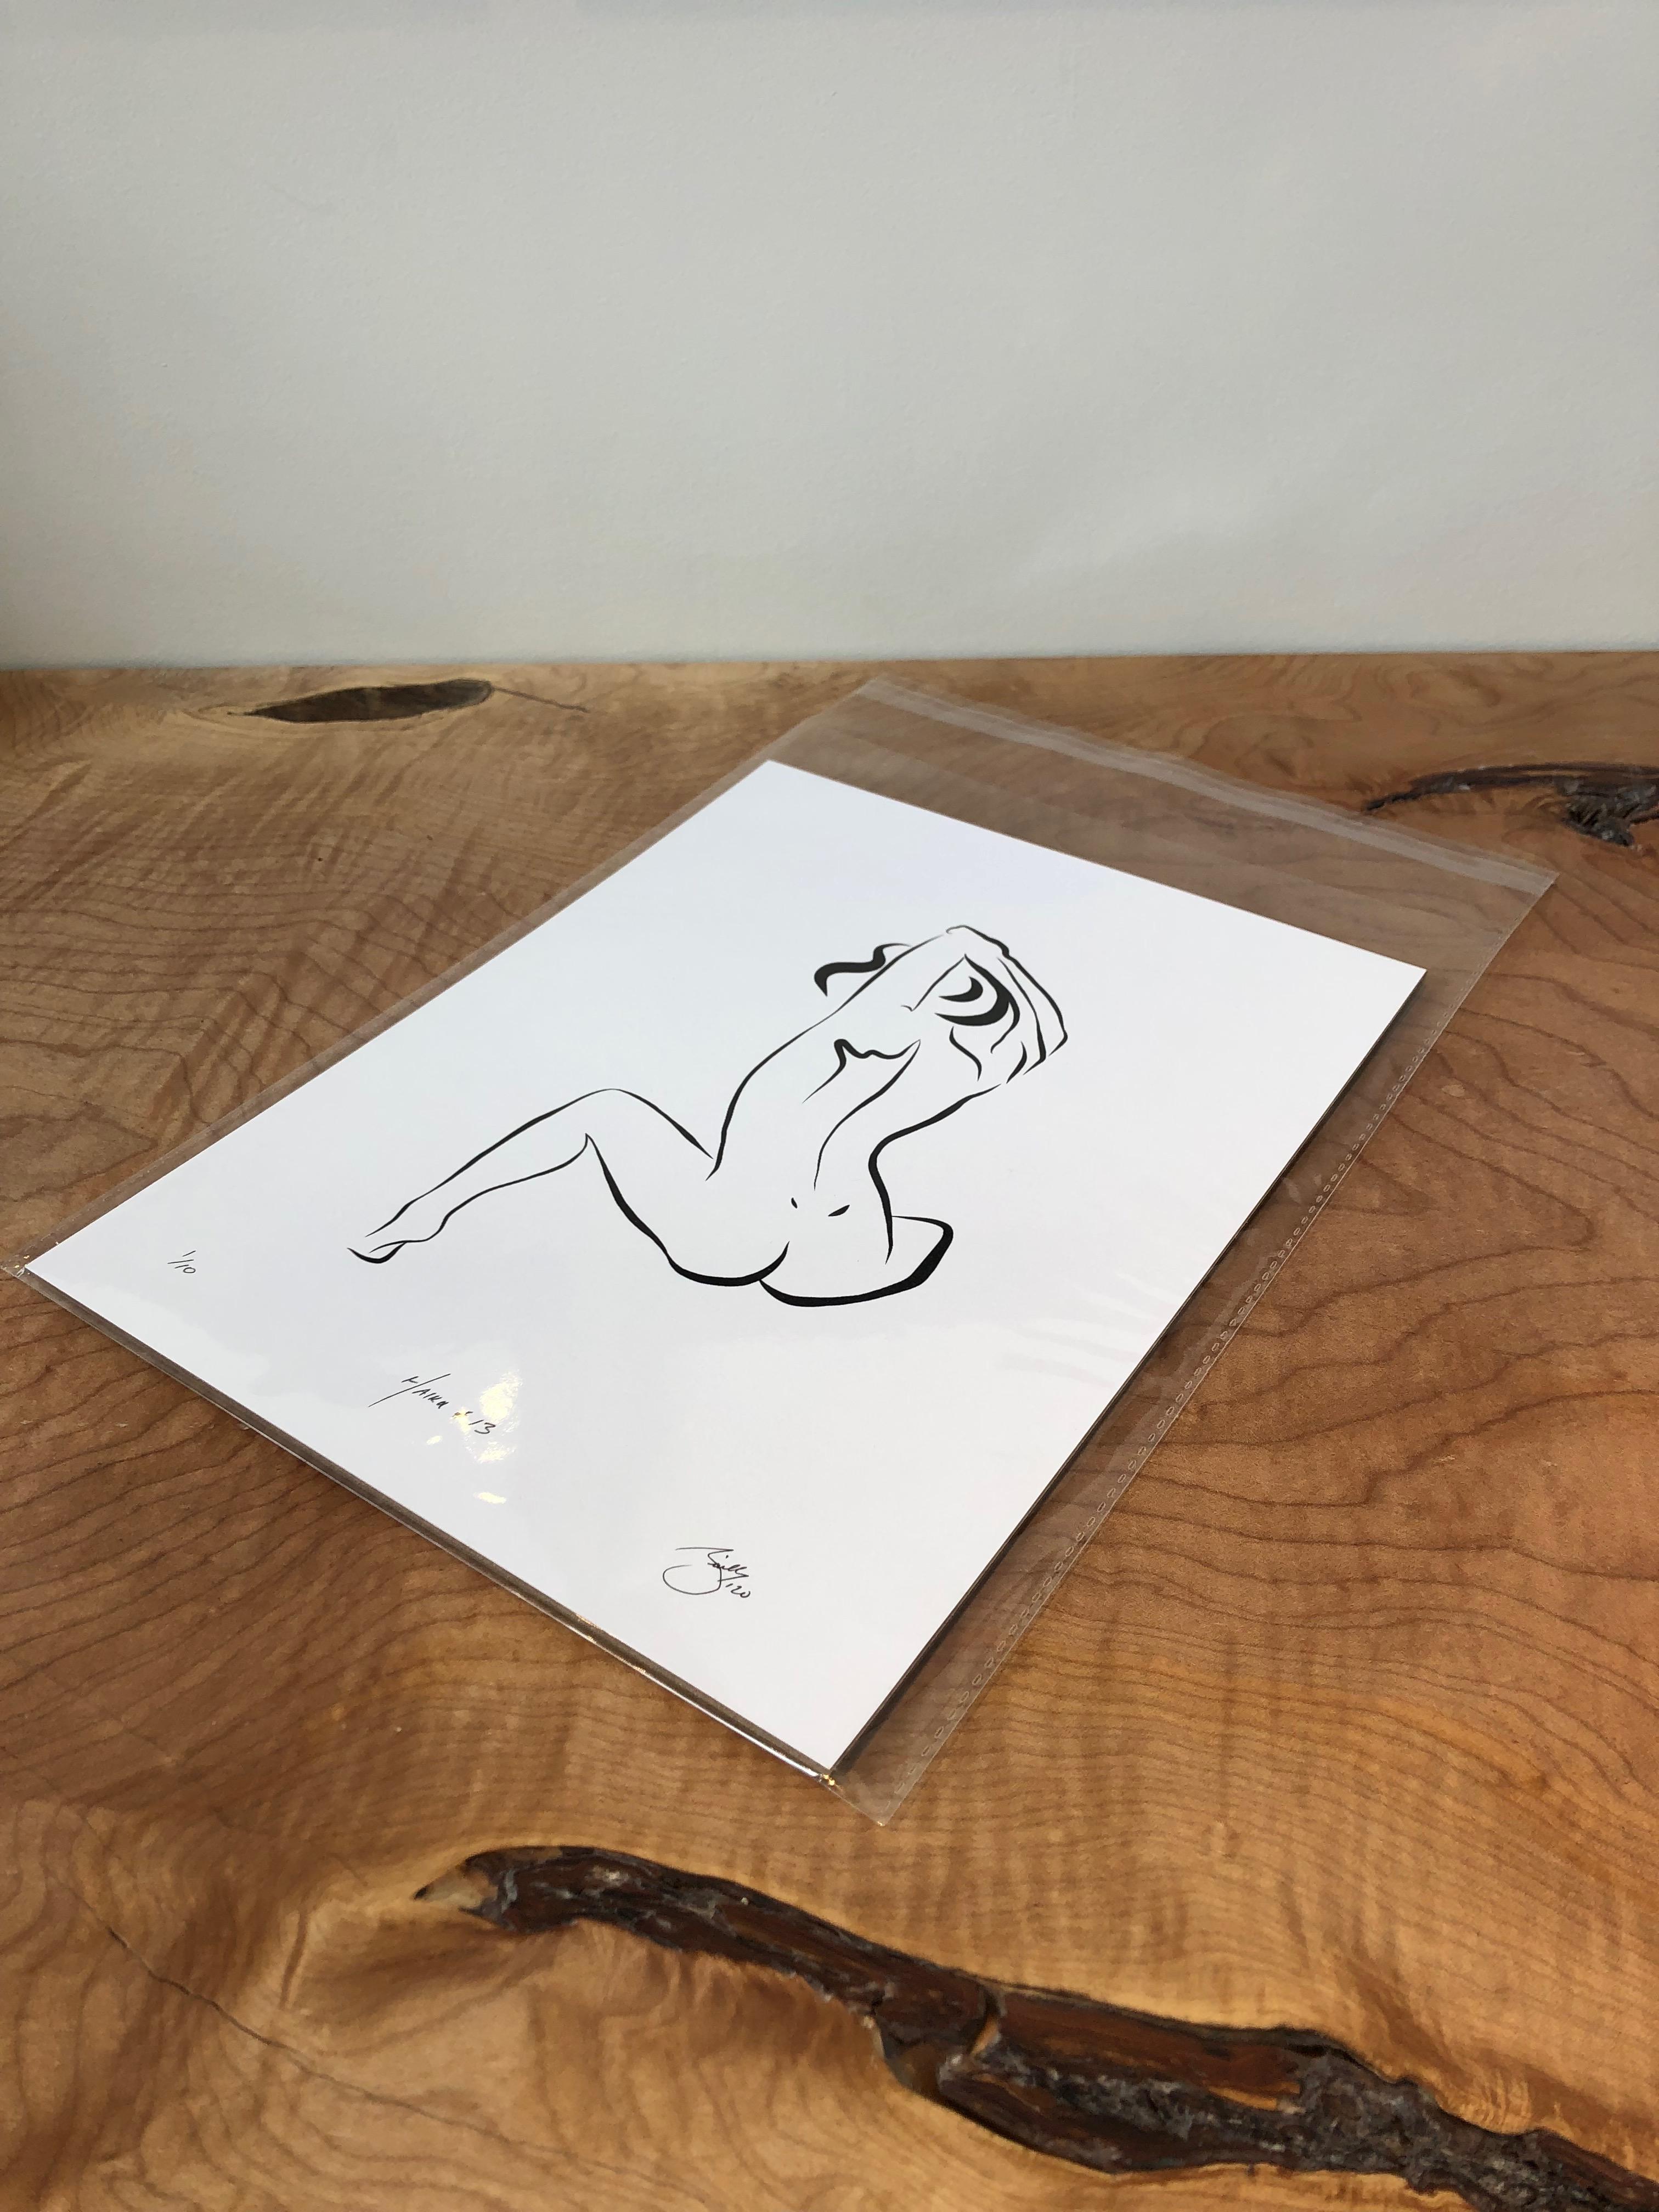 Haiku #13, 1/50 - Digital Vector Drawing Seated Female Nude Woman Figure - Print by Michael Binkley